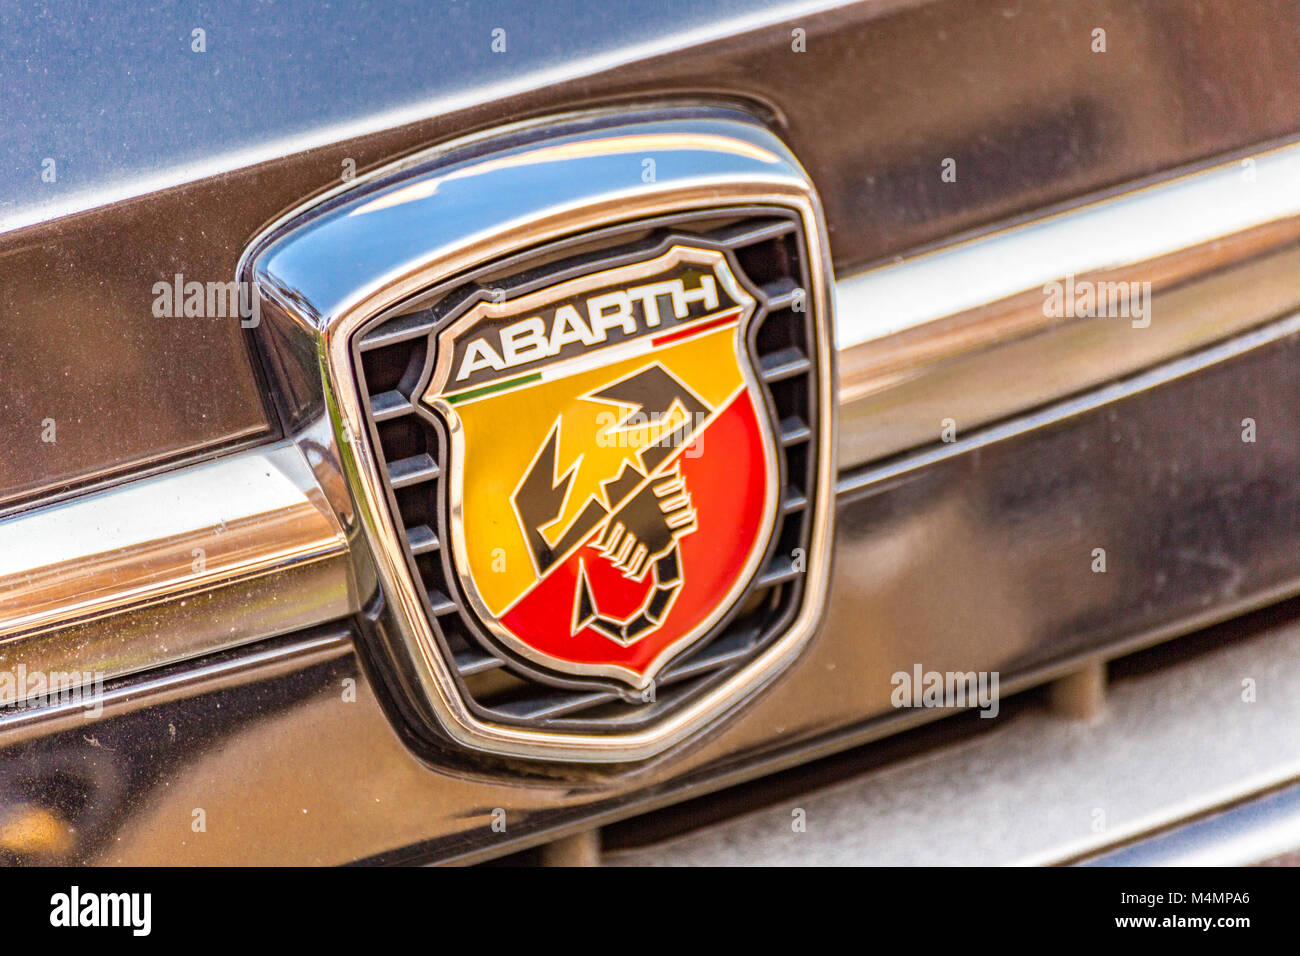 RAVENNA, Italia - 14 febbraio 2018: sporcizia copre il logo di un'auto. Marchio Abarth ha offerto alcuni dei più fiato visualizza a 2018 Retromobi Foto Stock